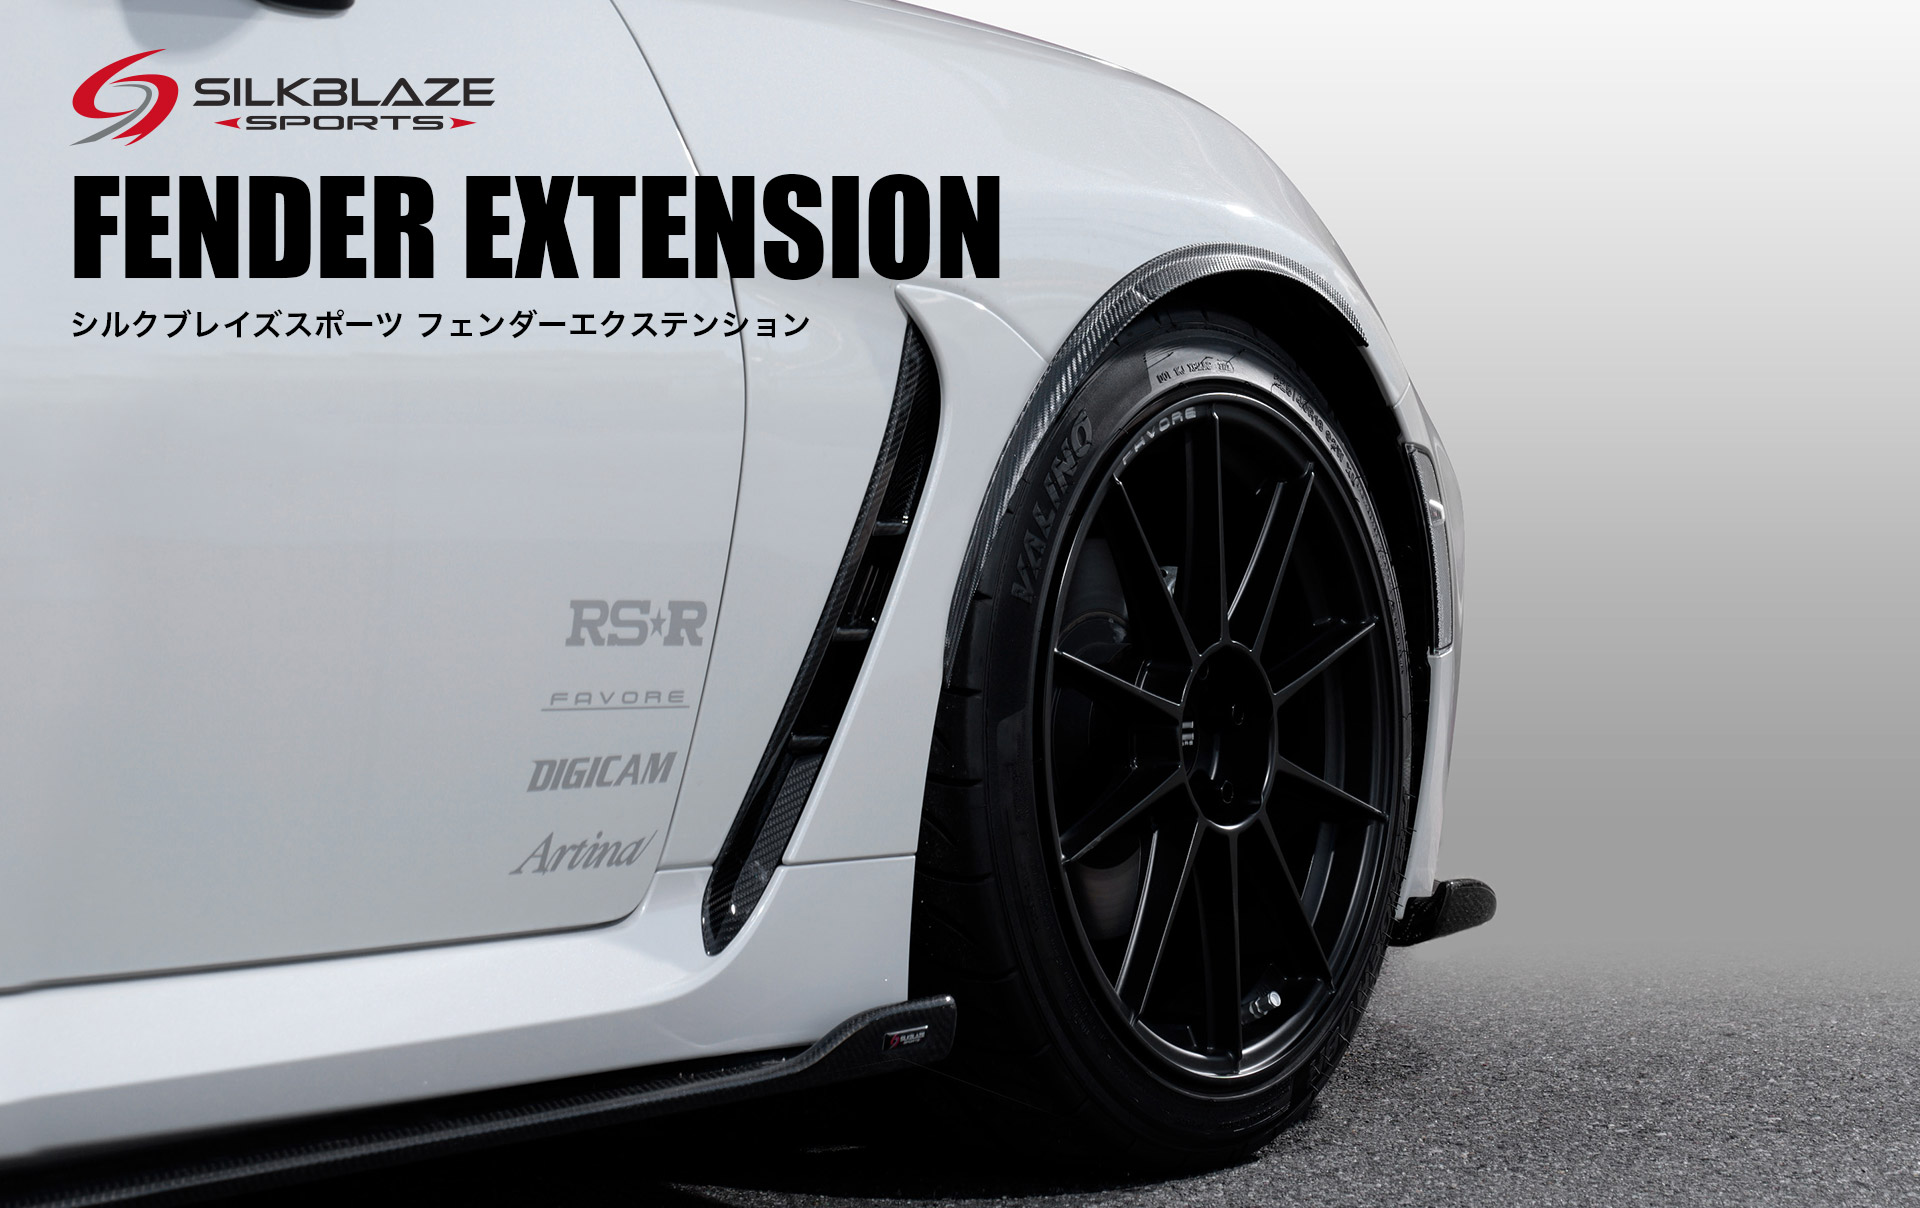 フェンダーエクステンション 艶無しカーボン柄 720mm SilkBlaze SPORTS シルクブレイズ スポーツ